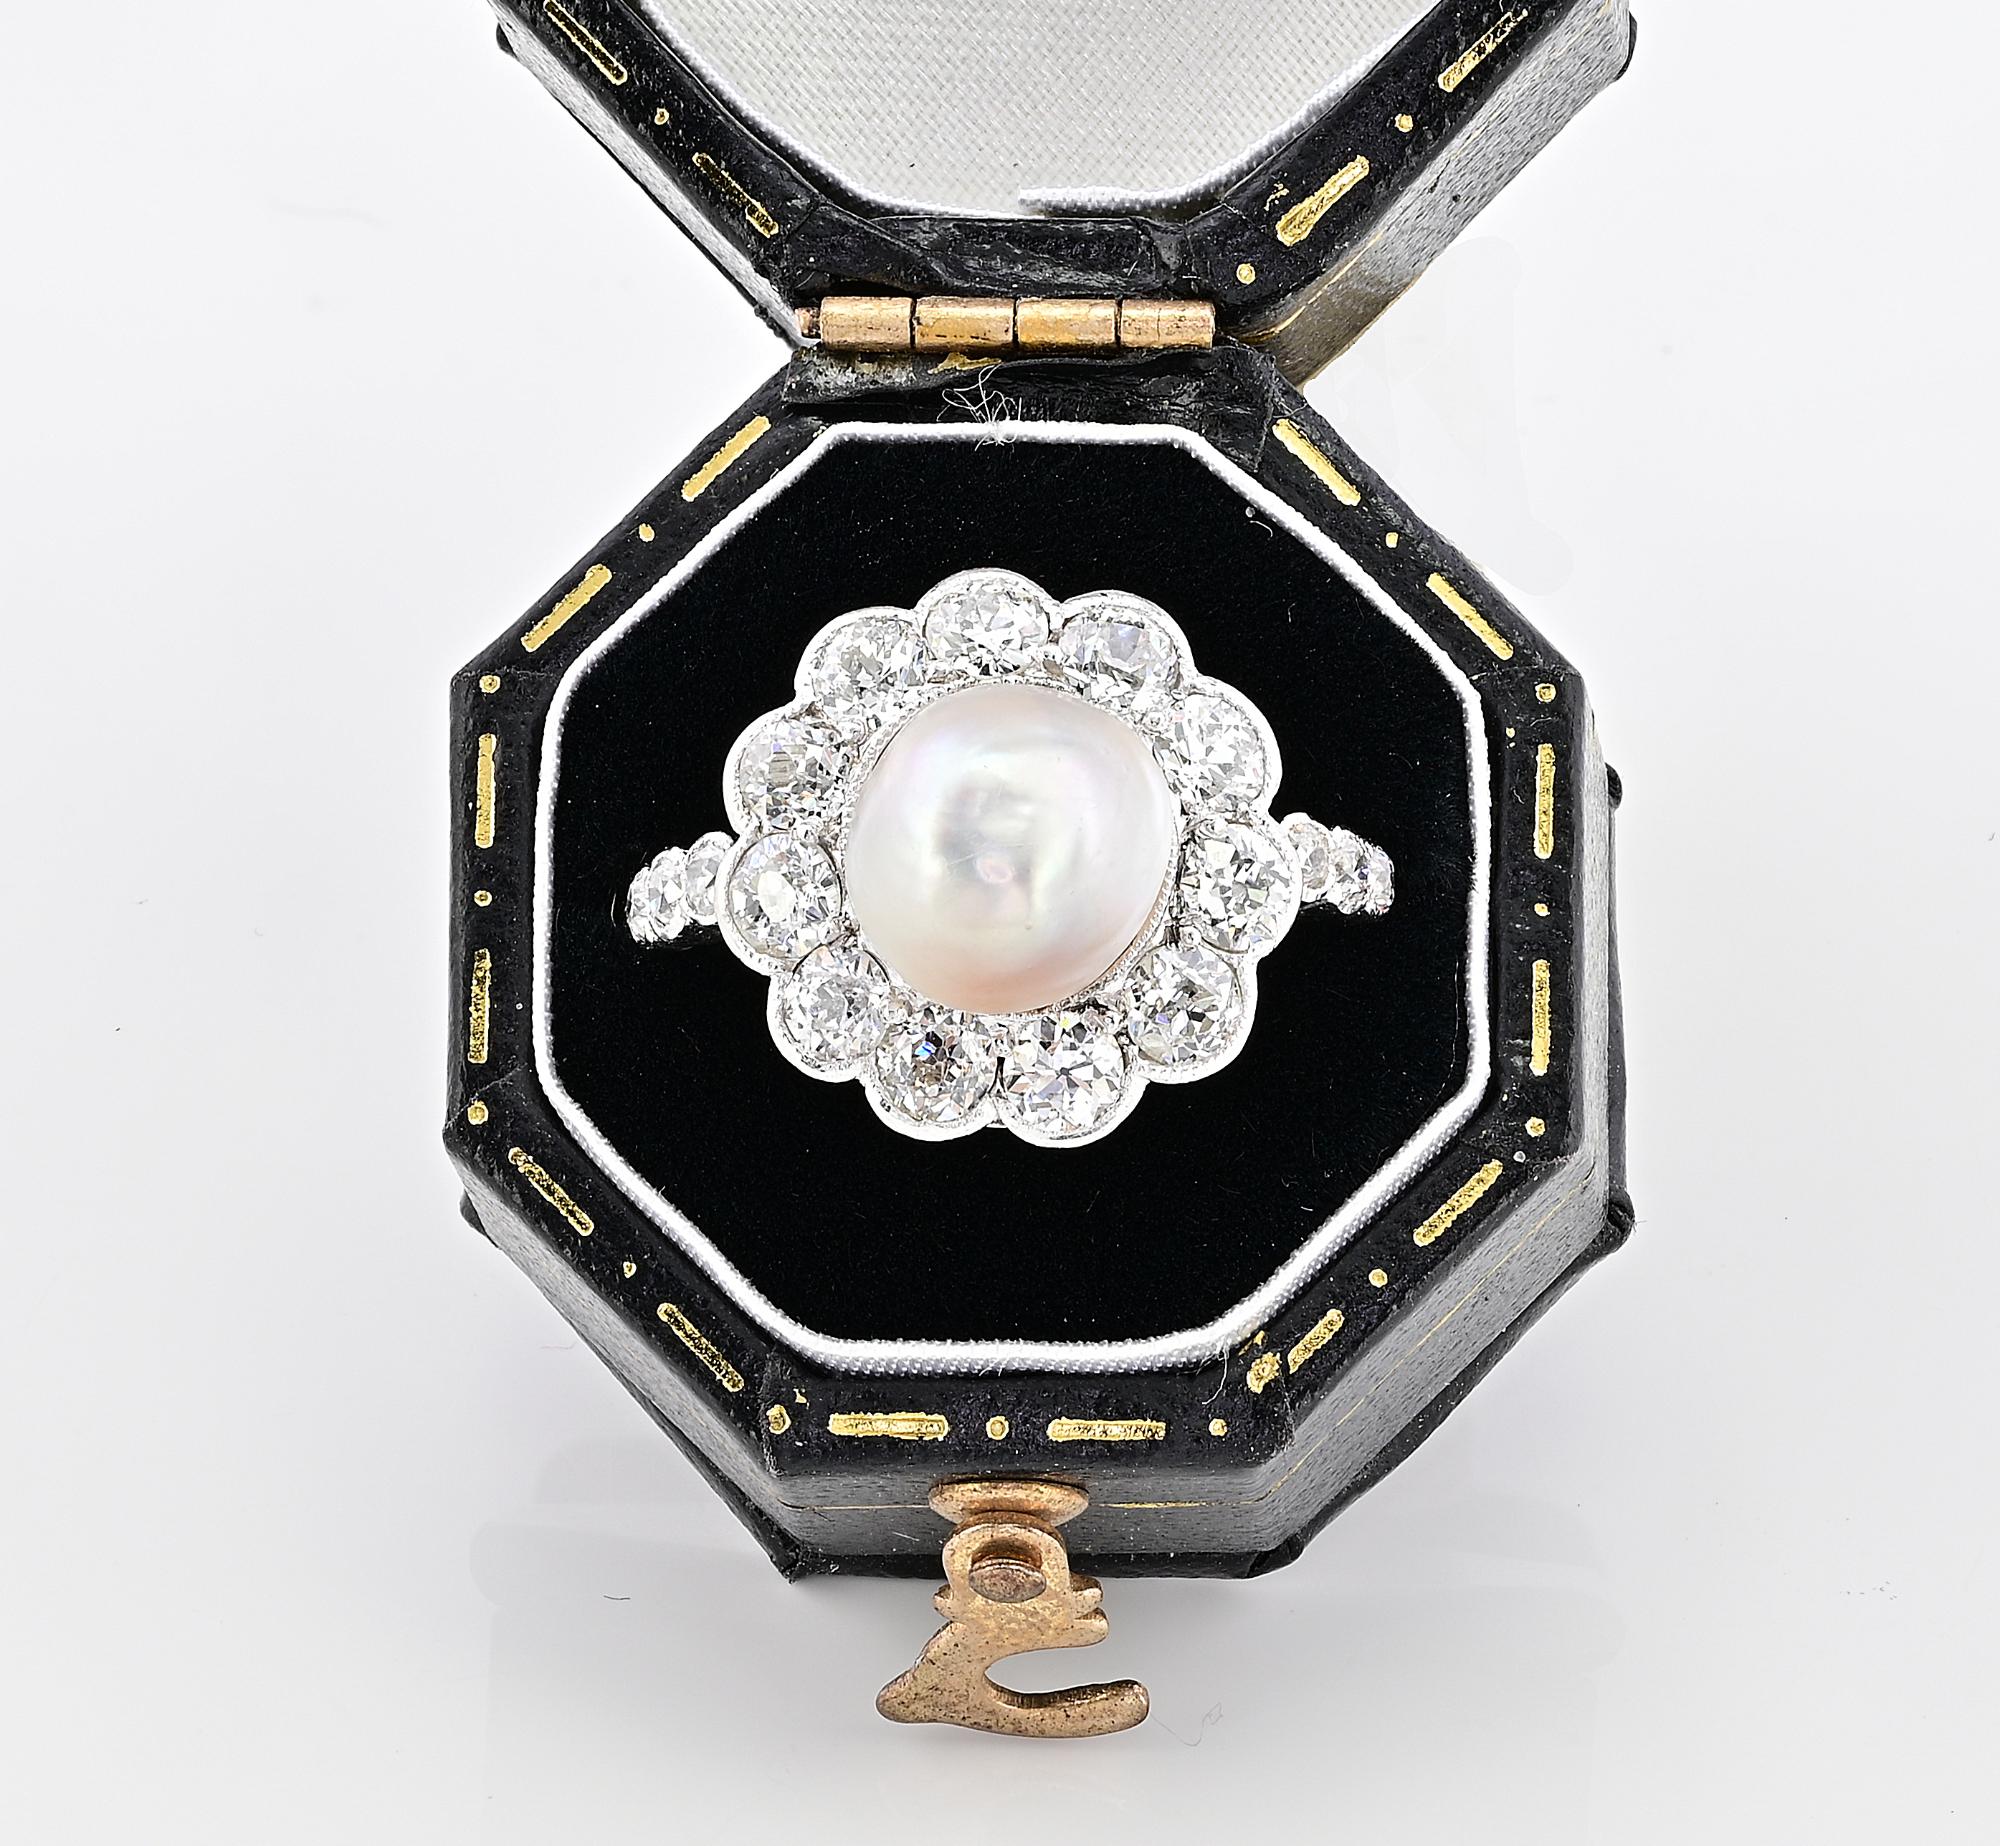 Dieser fabelhafte antike Diamant- und Perlenring aus der Edwardianischen Zeit ist der Inbegriff ewiger Eleganz
Datiert um 1910, handgefertigt aus massivem 18 Kt Gold mit Platinüberzug
Blühende Gänseblümchenform in wunderschöner Kombination aus